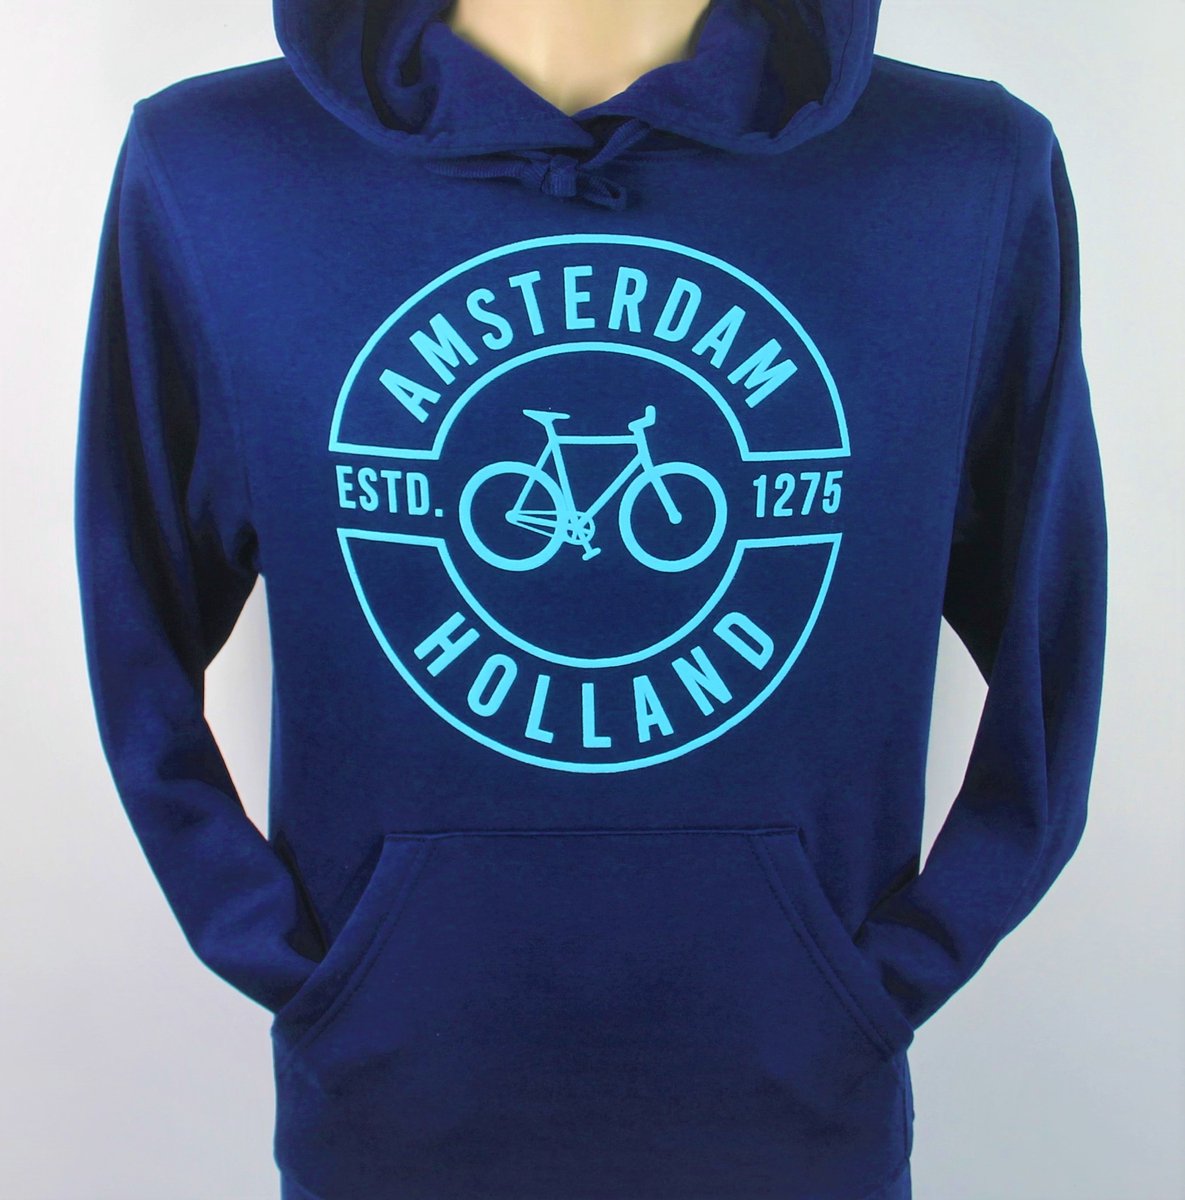 Hooded Sweater - Met Trekkoord - Capuchon - Chill - Trui - Vest - met capuchon - Outdoor - Fiets - Discover - 1275 -Amsterdam - Bike Town - Travel - Blauwe Fiets - Navy - Maat L